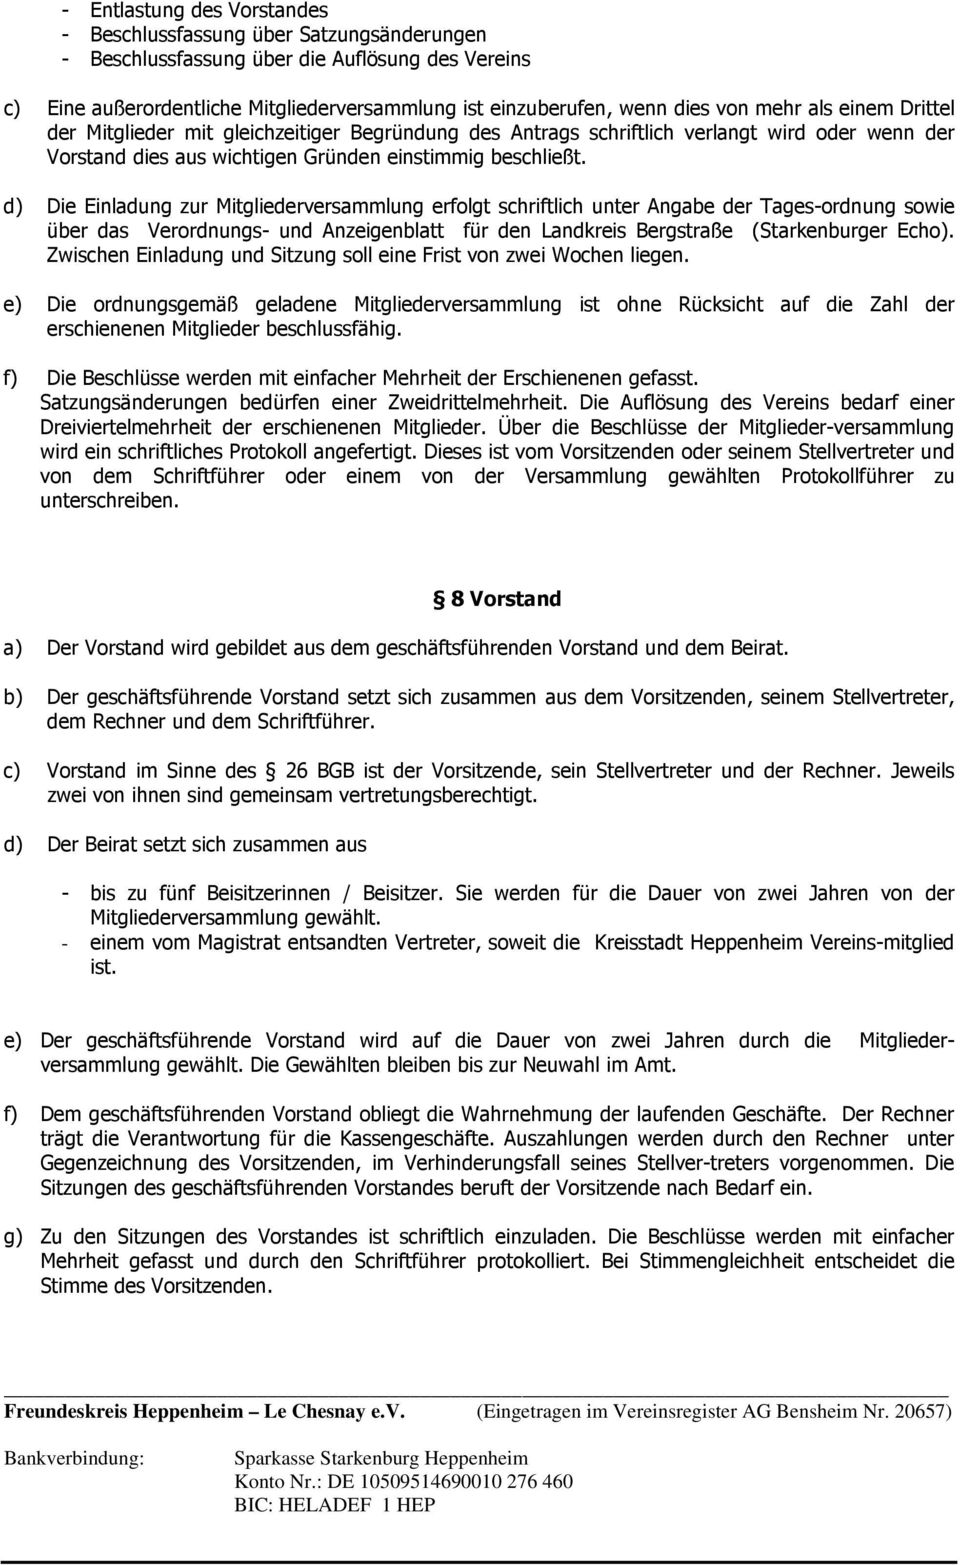 d) Die Einladung zur Mitgliederversammlung erfolgt schriftlich unter Angabe der Tages-ordnung sowie über das Verordnungs- und Anzeigenblatt für den Landkreis Bergstraße (Starkenburger Echo).